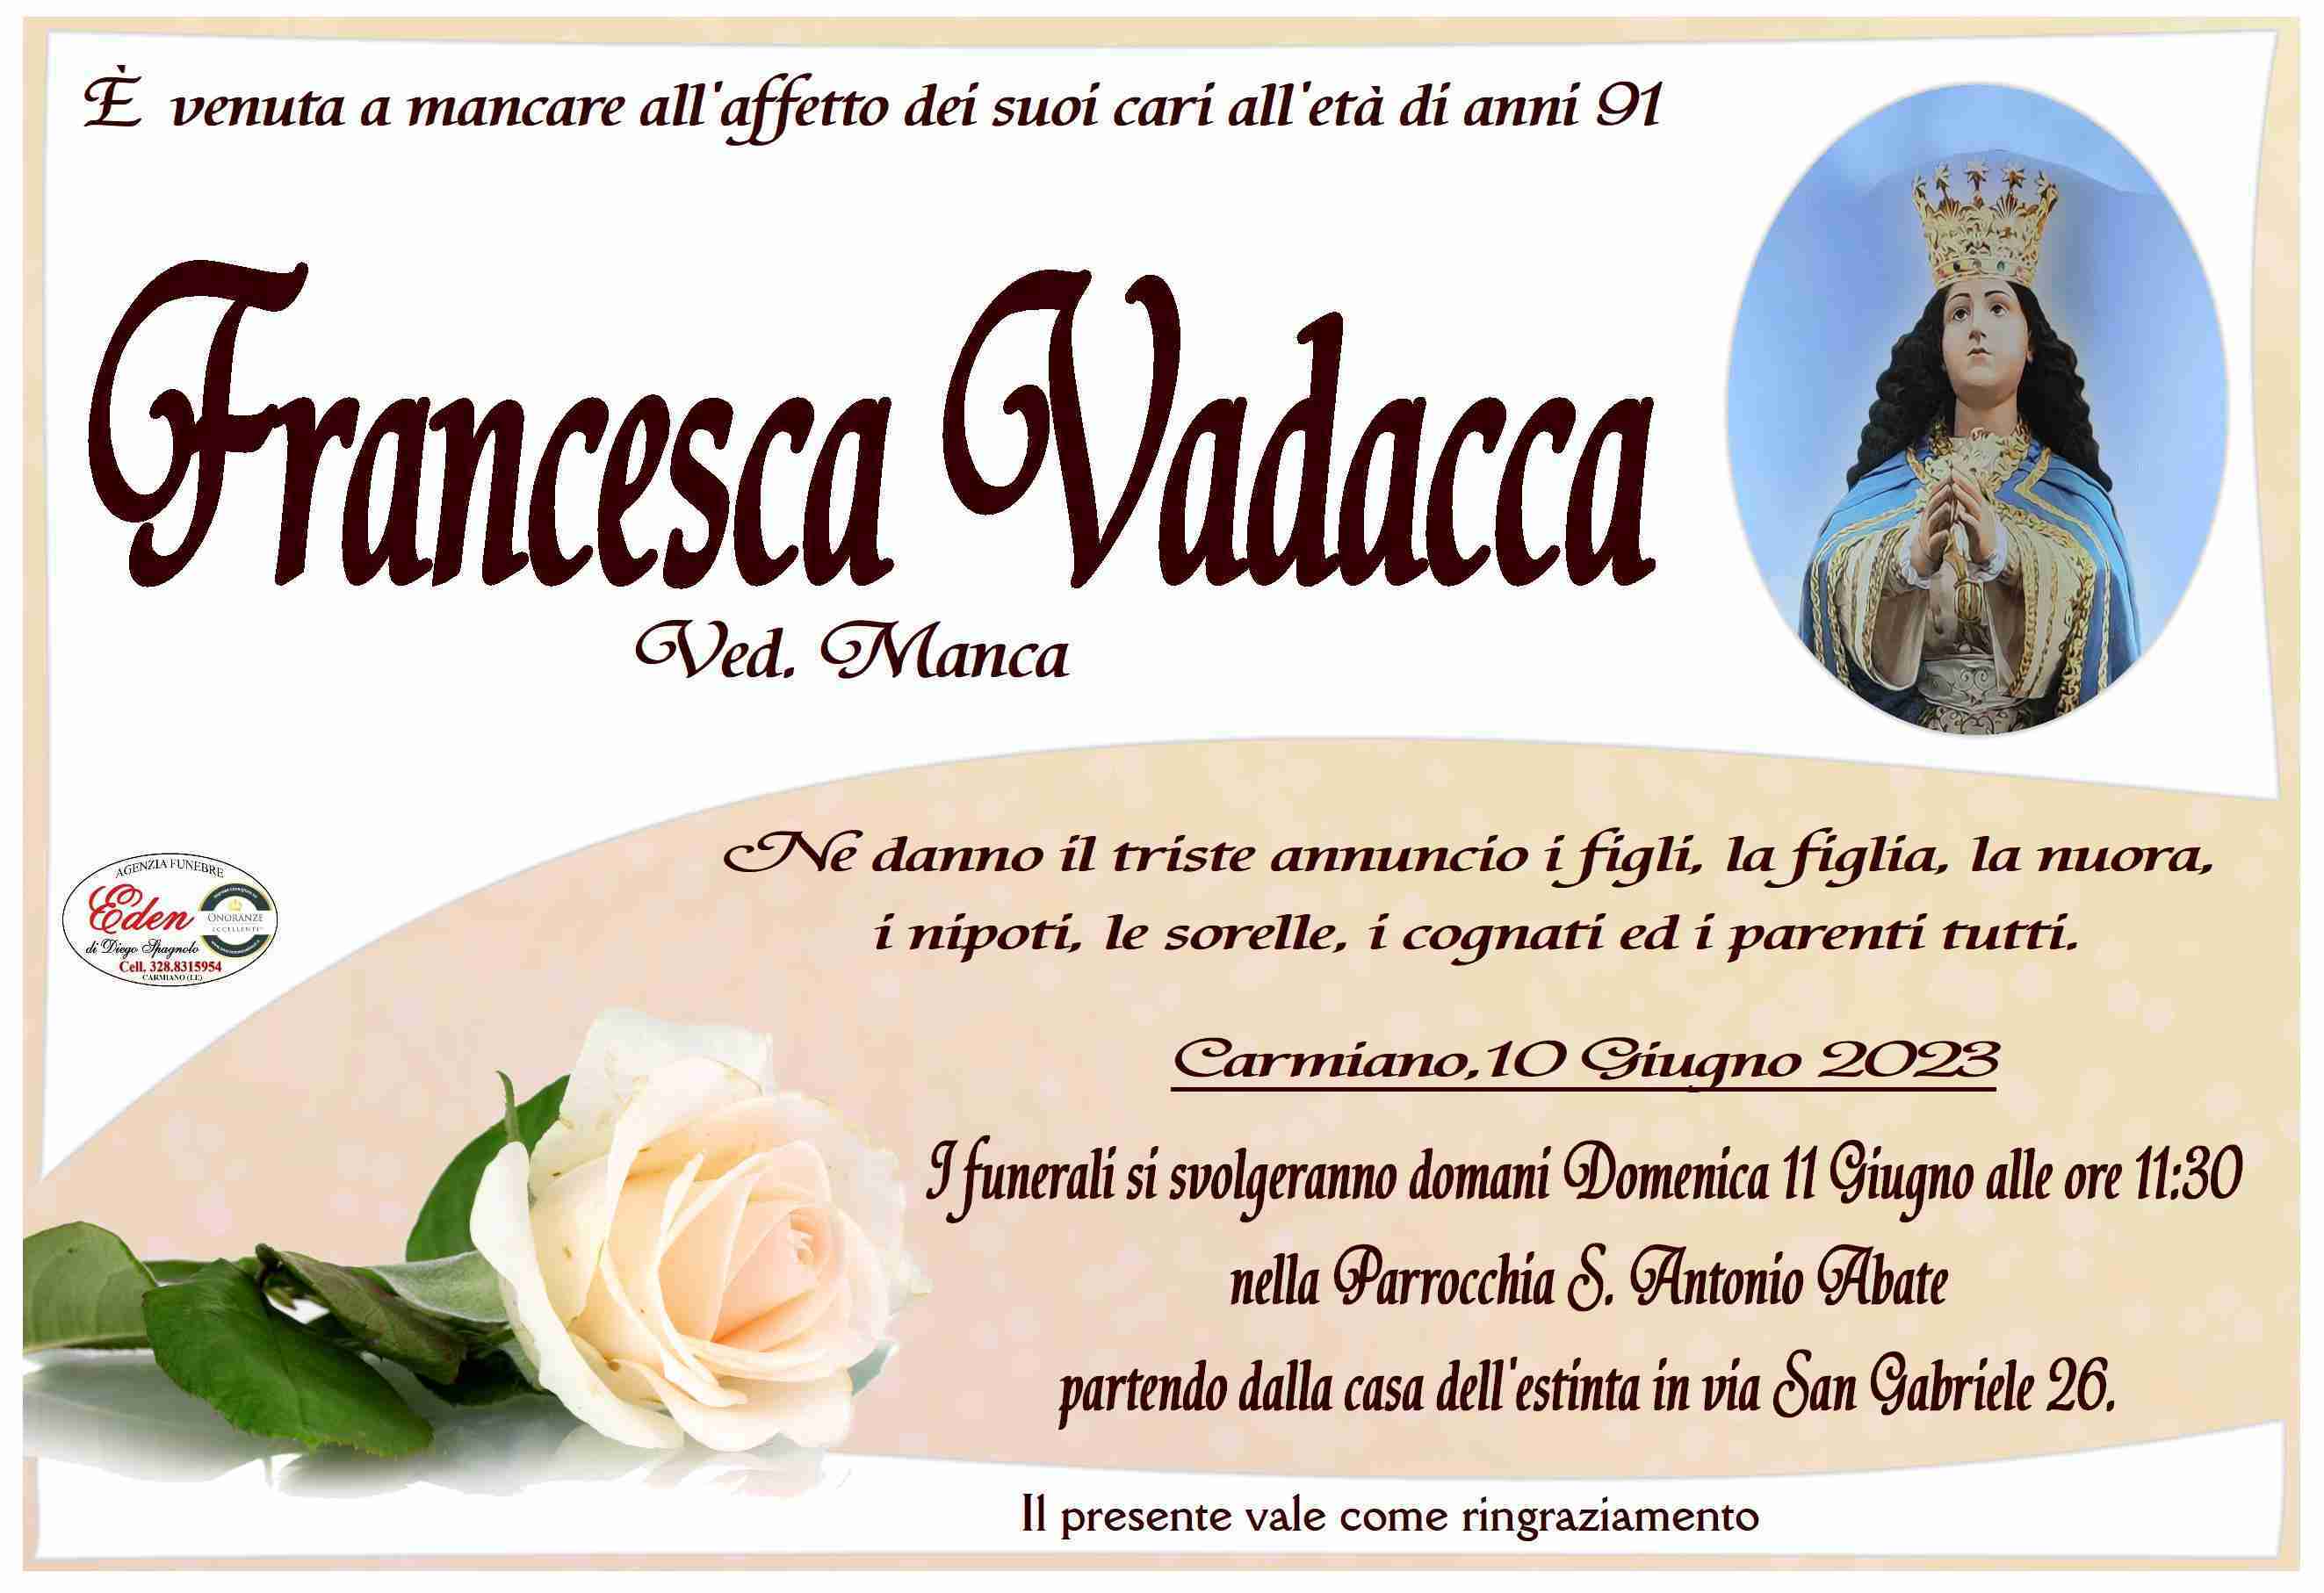 Francesca Vadacca